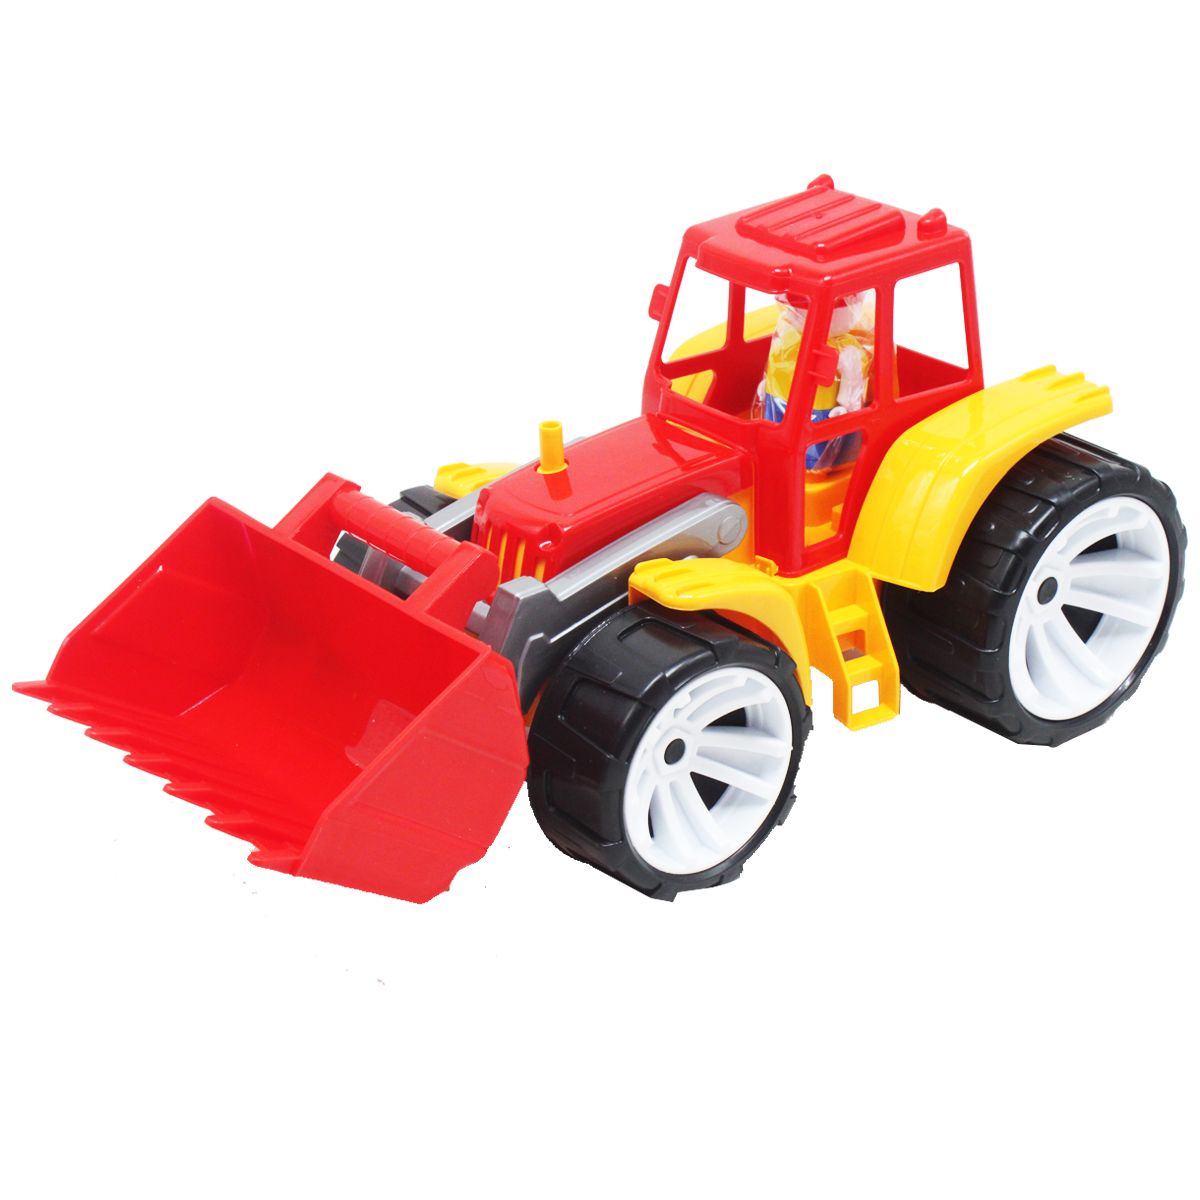 Пластиковая игрушка "Трактор", красный